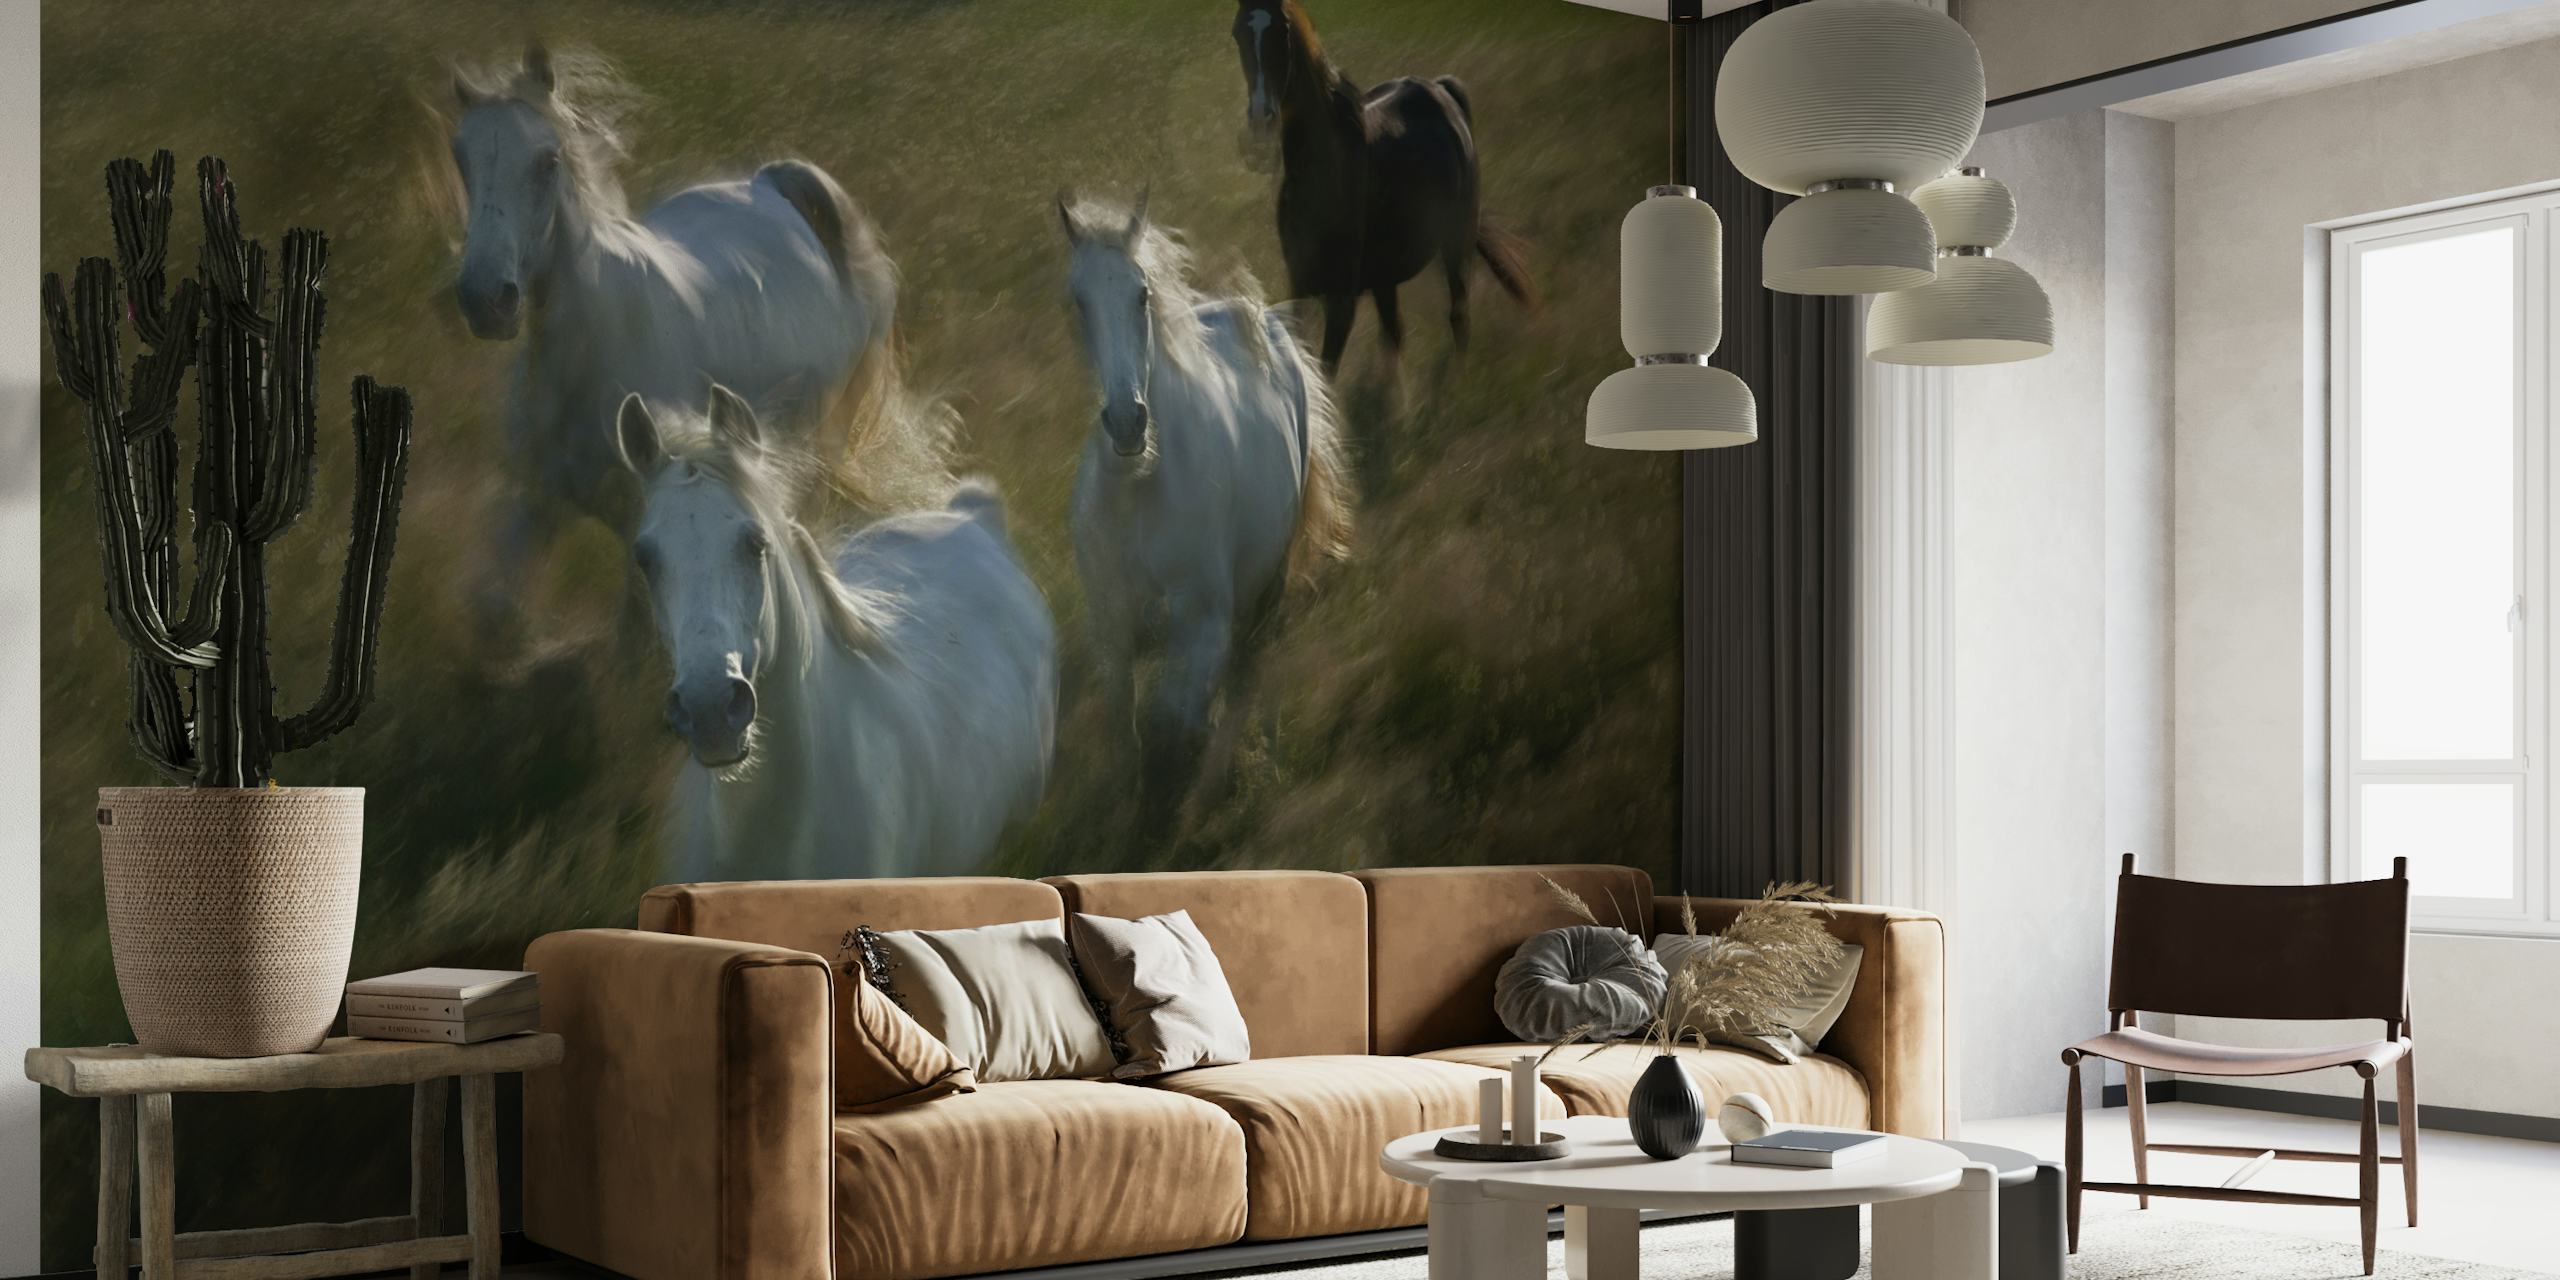 Fototapete „Pferde rennen“, die eine Herde weißer Pferde mit einem dunklen Pferd im Hintergrund zeigt, das über ein Feld galoppiert.